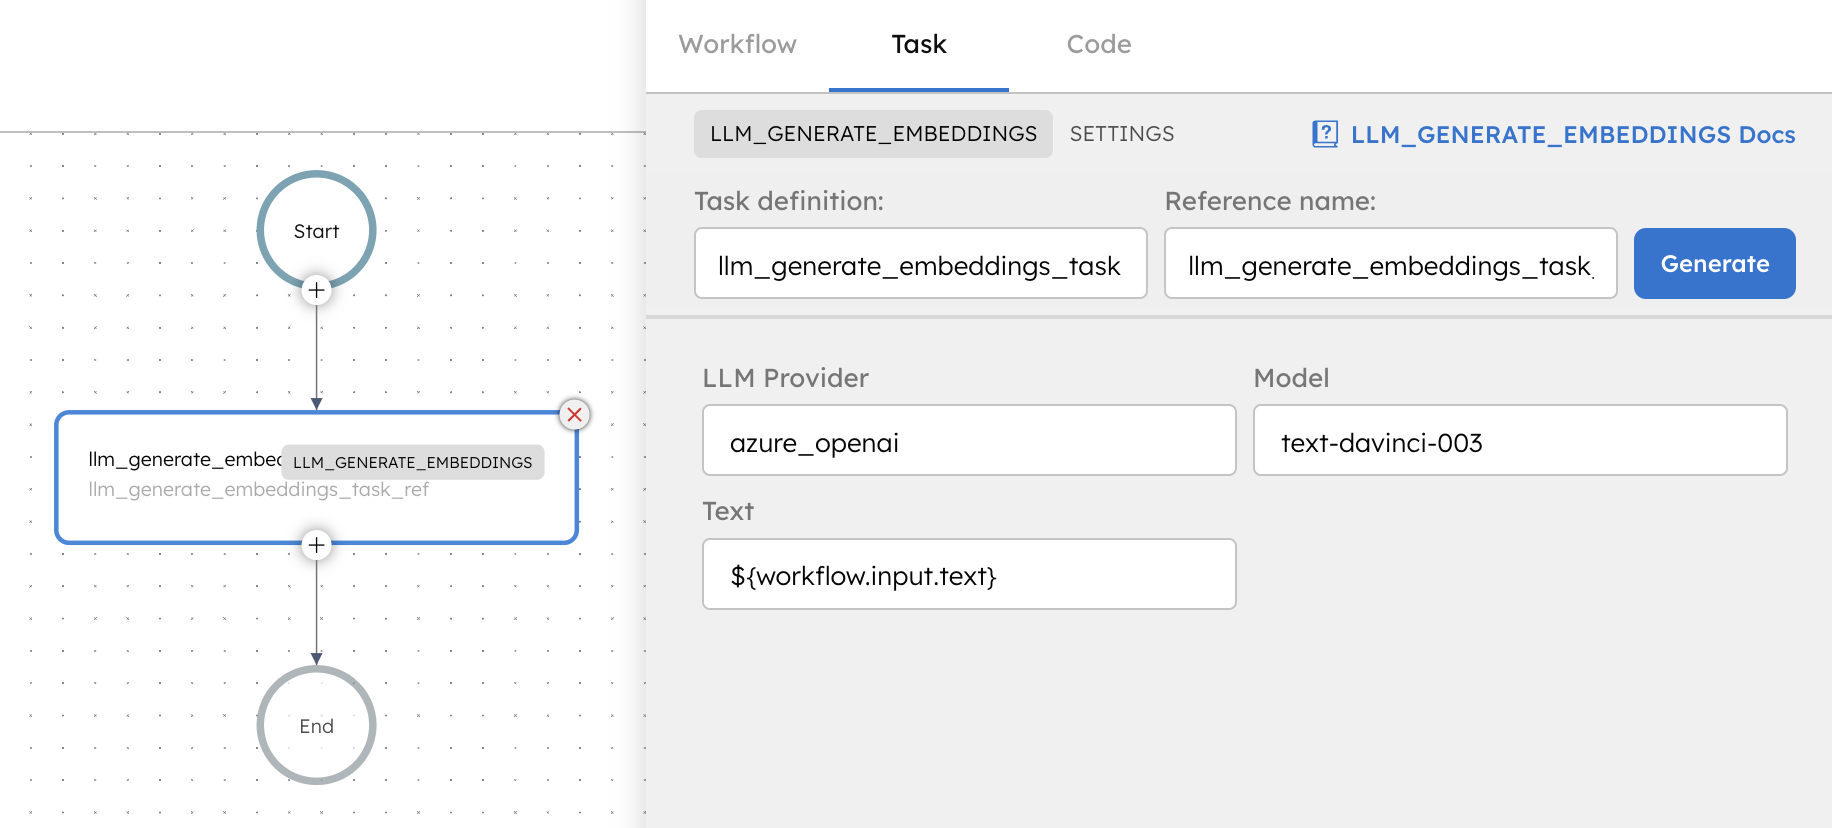 LLM Generate Embeddings Task